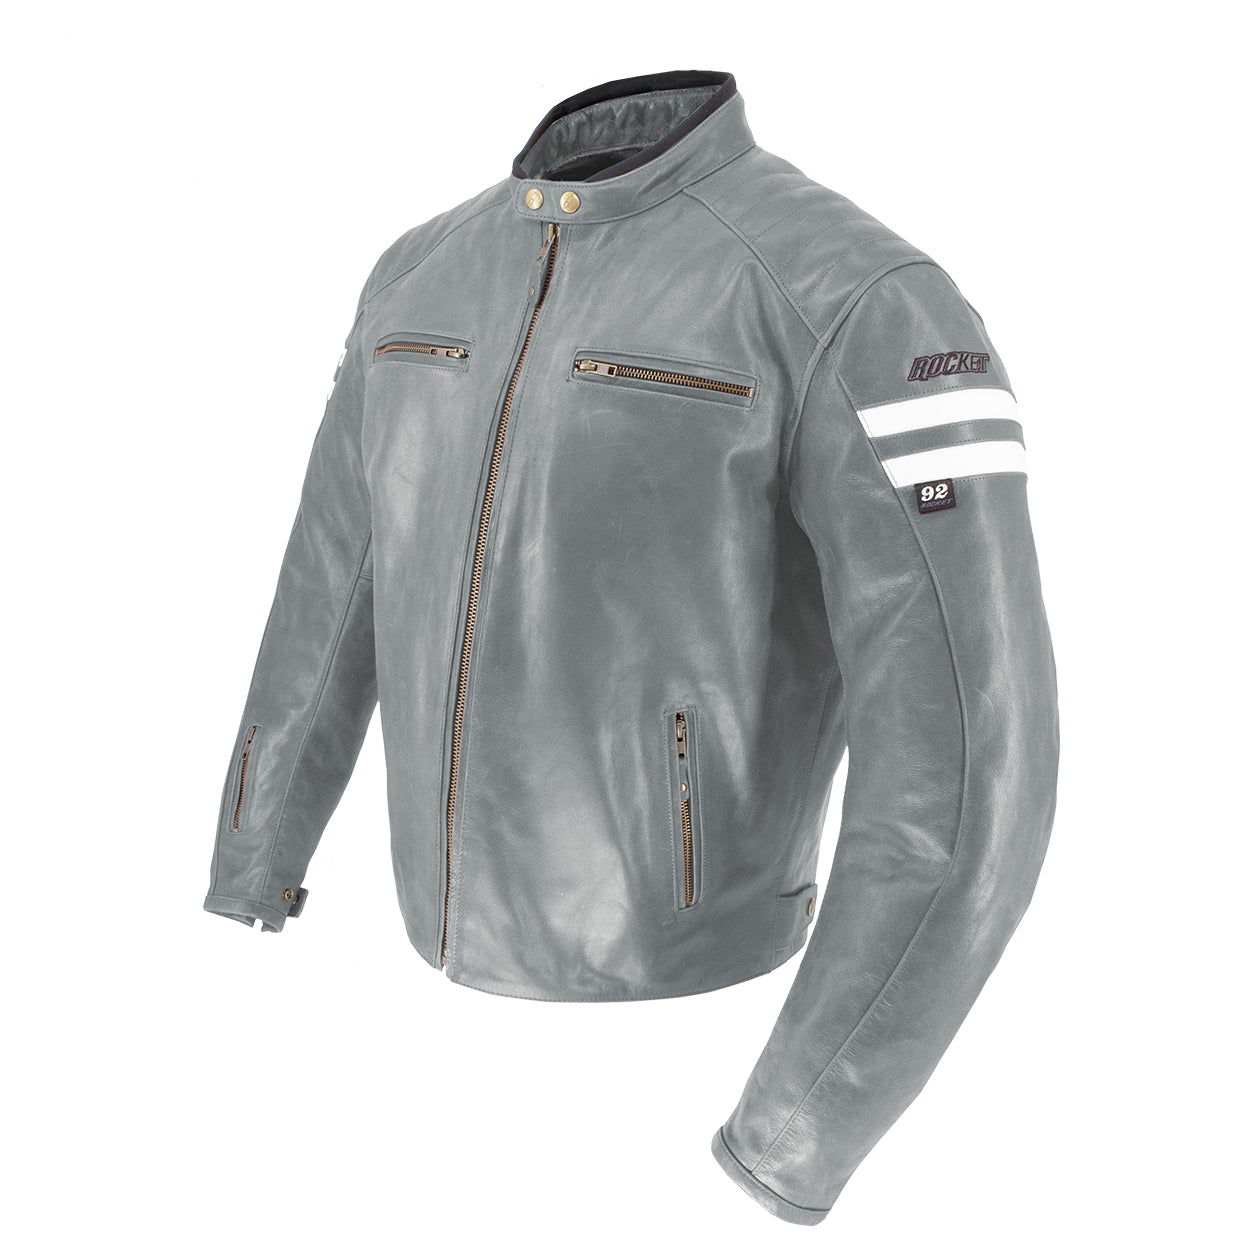 Joe Rocket Classic '92 Leather Jacket - Grey/White